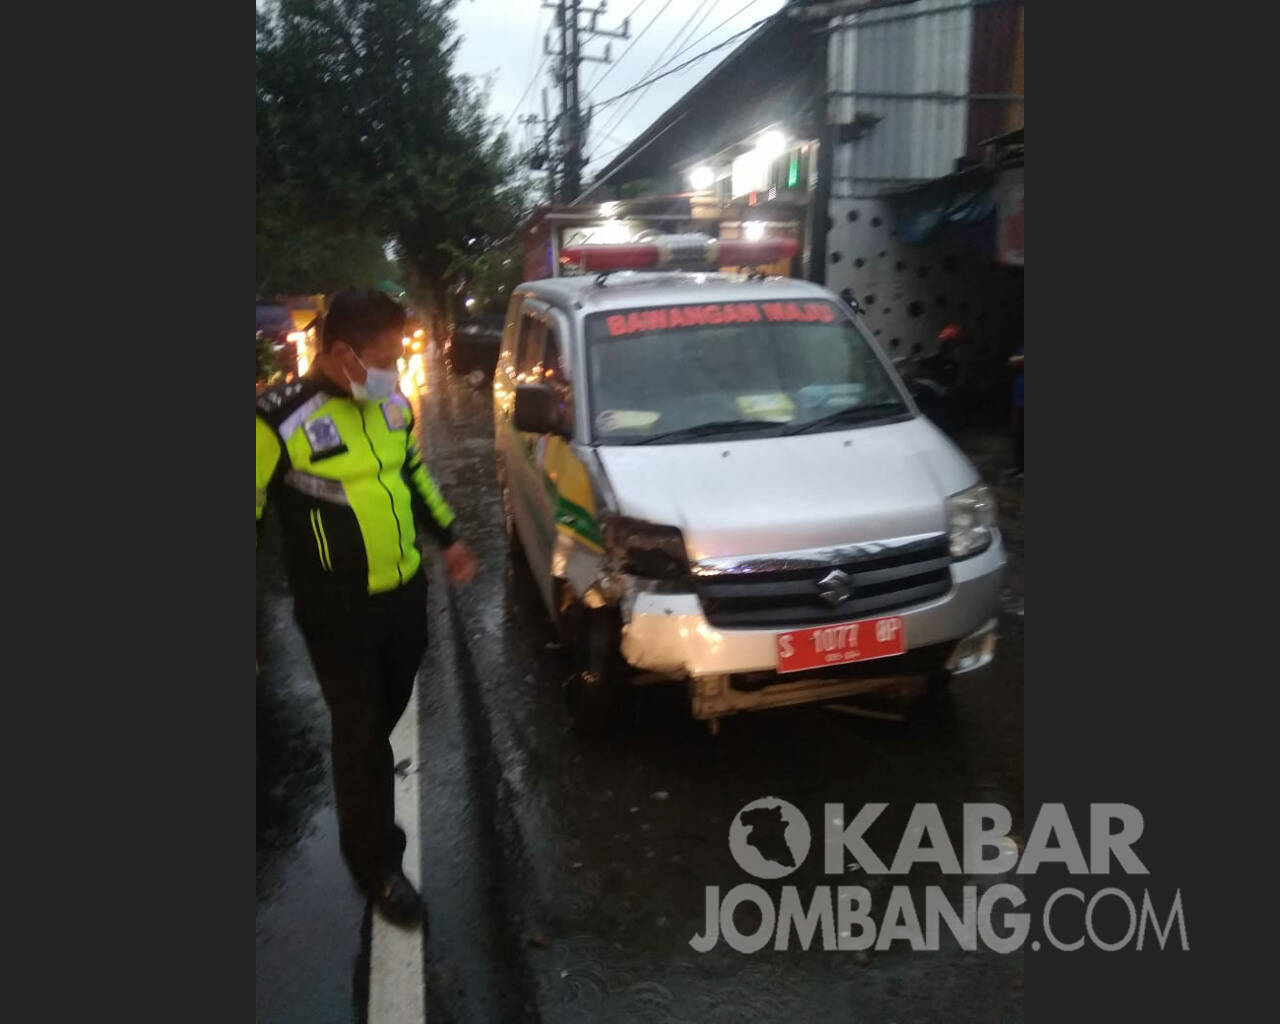 Mobil ambulans siaga desa terlibat kecelakaan di Tembelang Jombang. Kabarjombang.com/Daniel Eko/